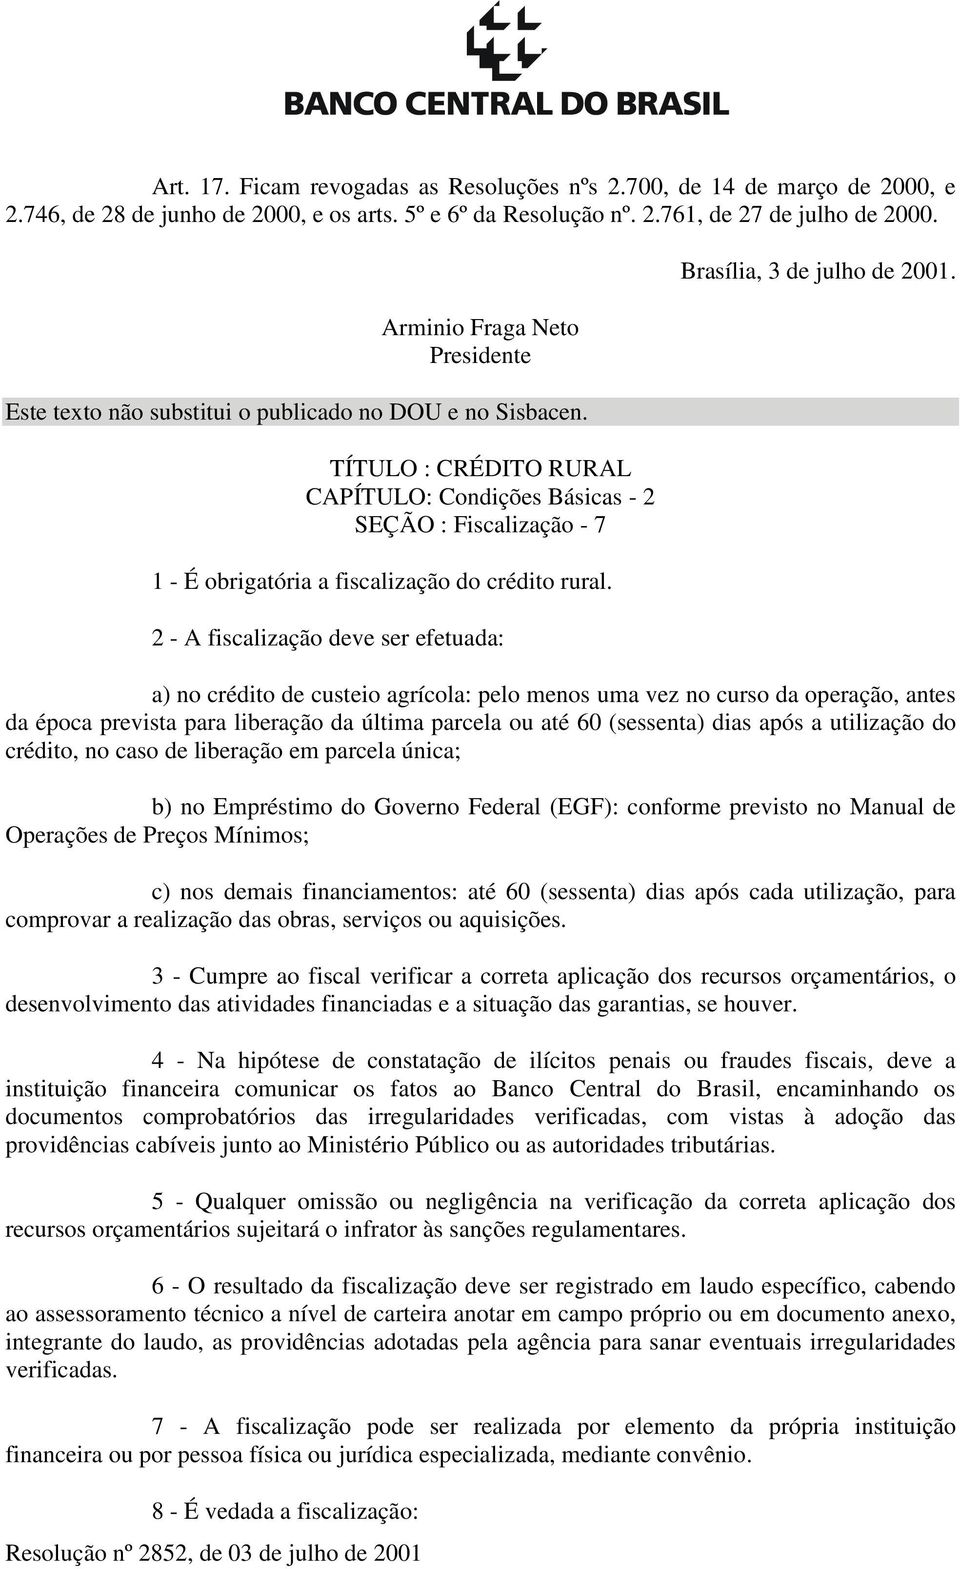 TÍTULO : CRÉDITO RURAL CAPÍTULO: Condições Básicas - 2 SEÇÃO : Fiscalização - 7 1 - É obrigatória a fiscalização do crédito rural. 2 - A fiscalização deve ser efetuada: Brasília, 3 de julho de 2001.